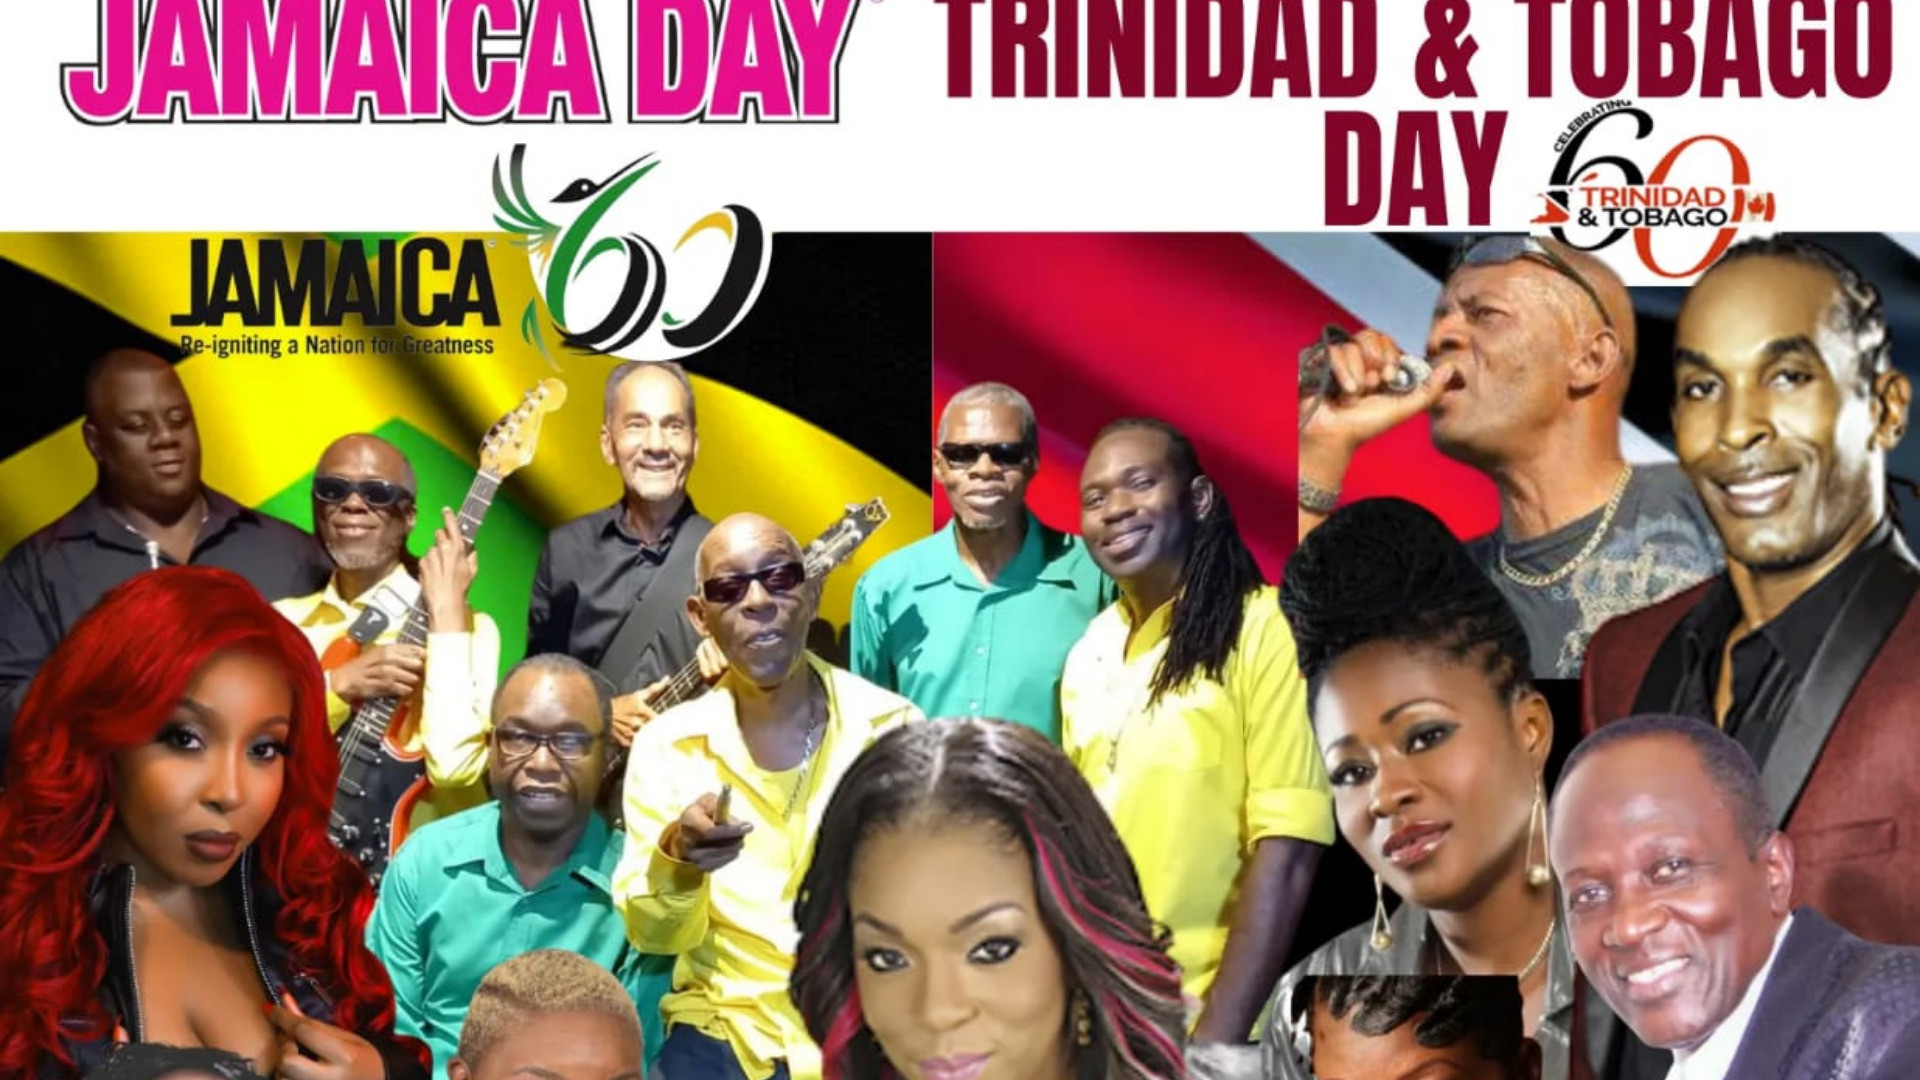 Jamaica - Trinidad & Tobago Day